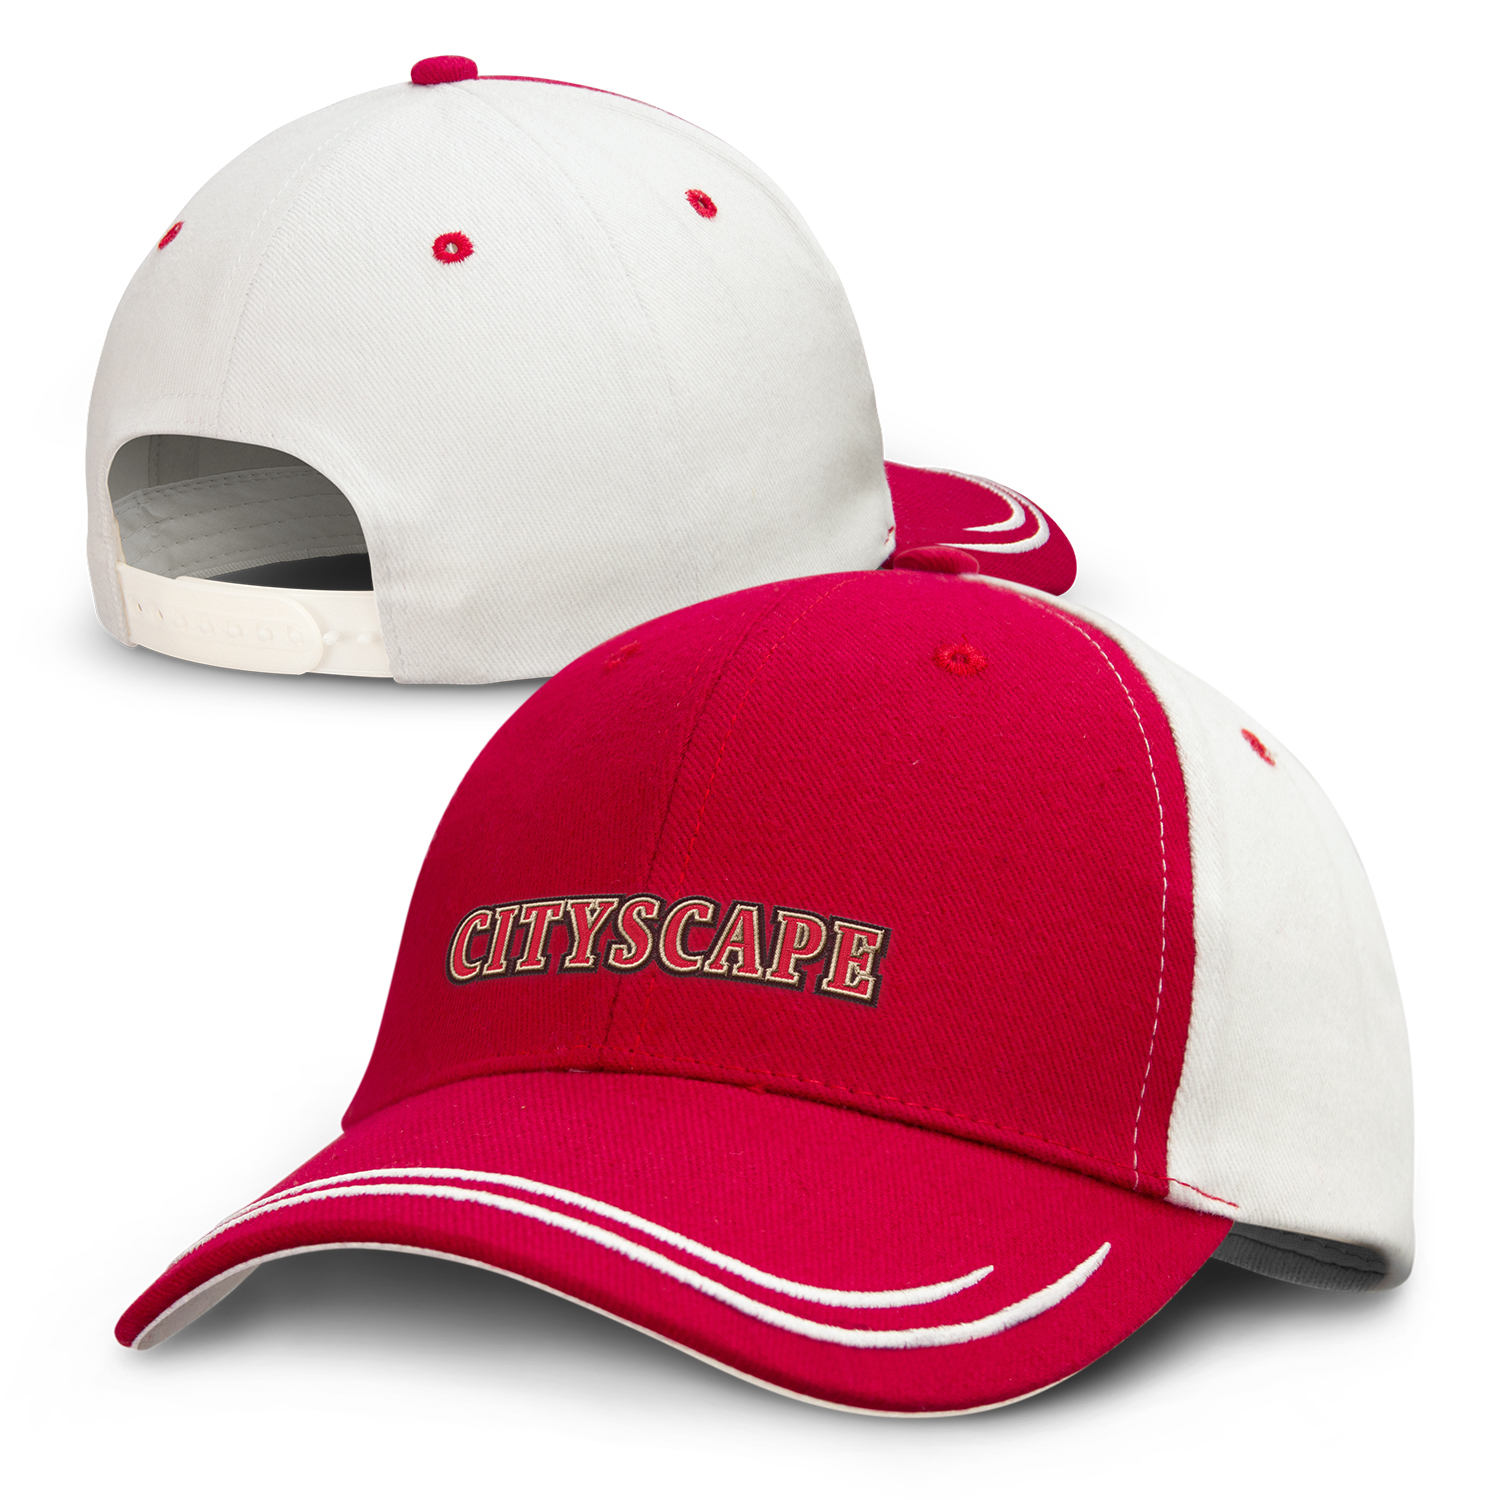 Headwear Express Chatham Cap cap